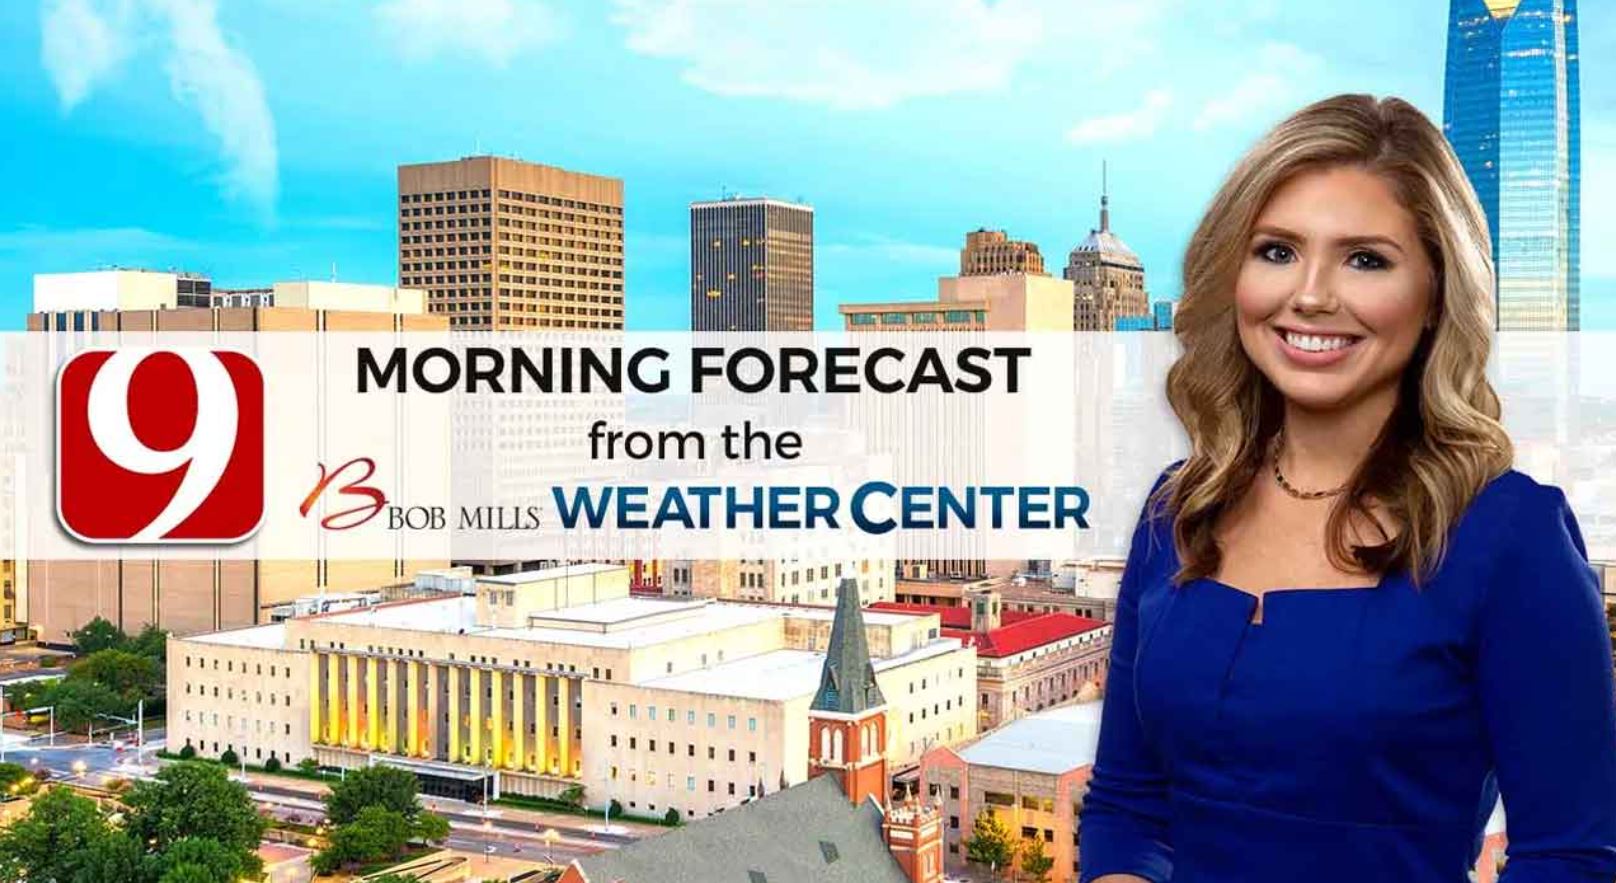 Cassie's 9 A.M. Wednesday Forecast